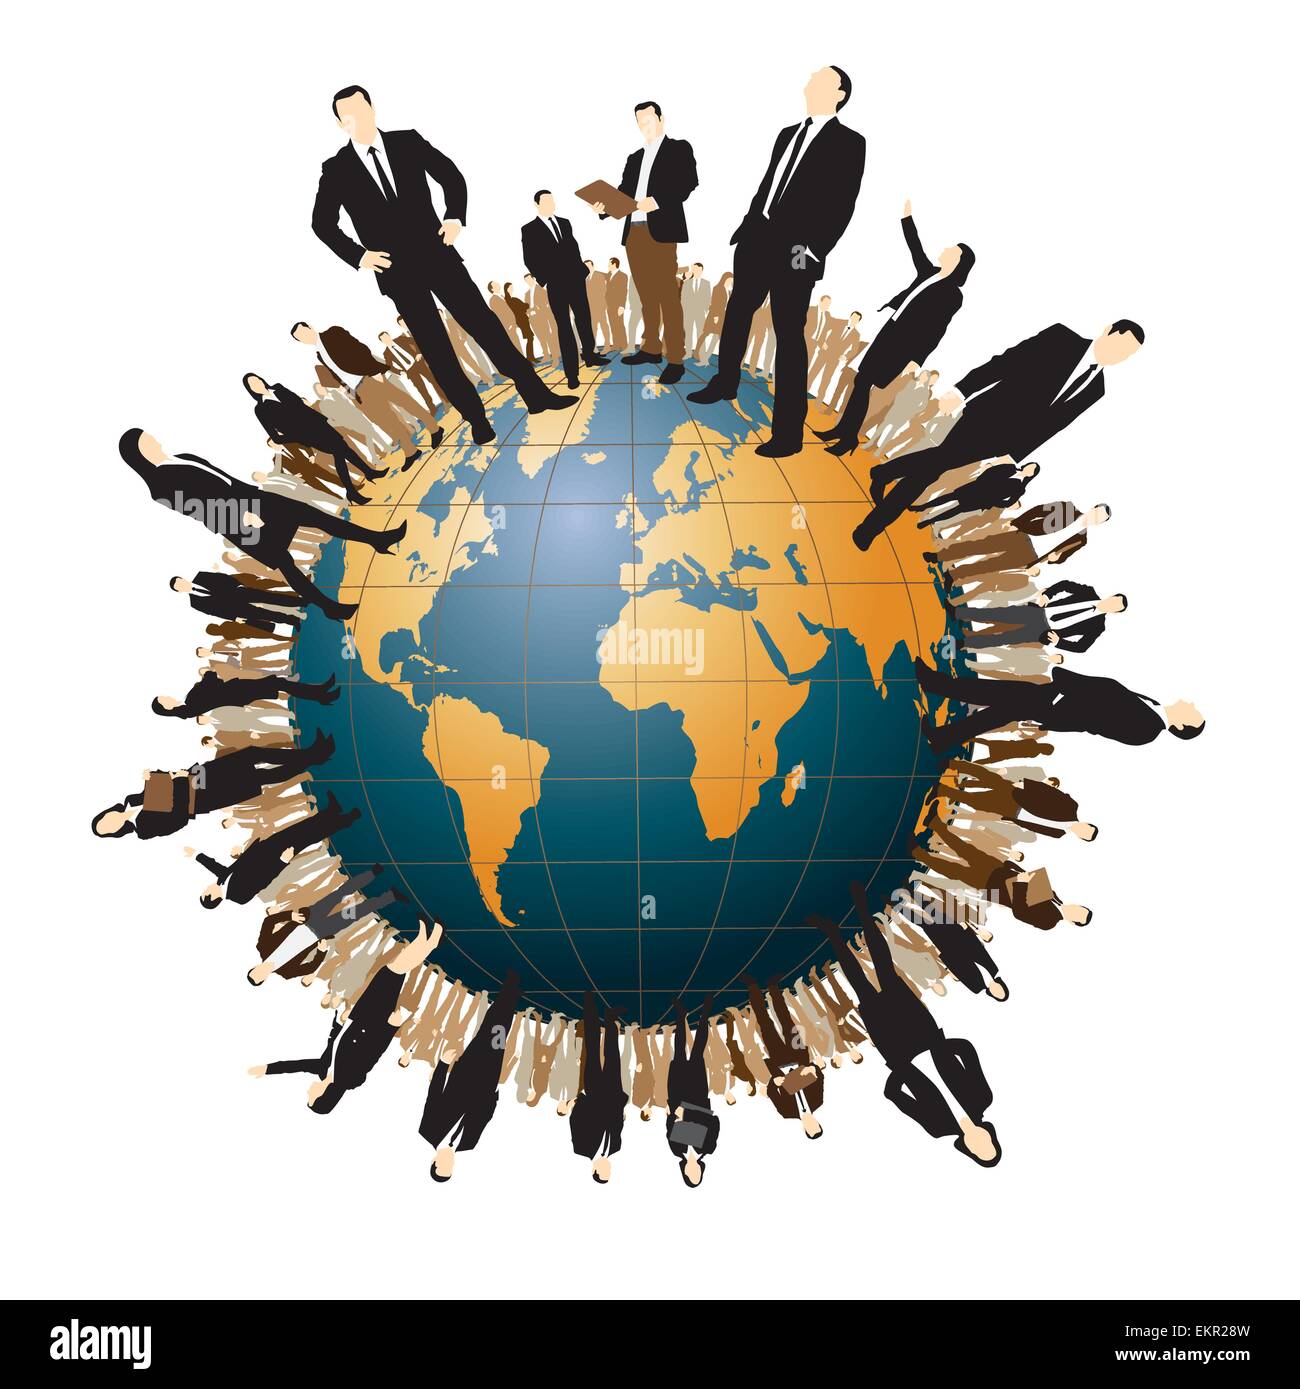 Geschäftsleuten stehen auf einer Weltkugel. Vektor-illustration Stock Vektor